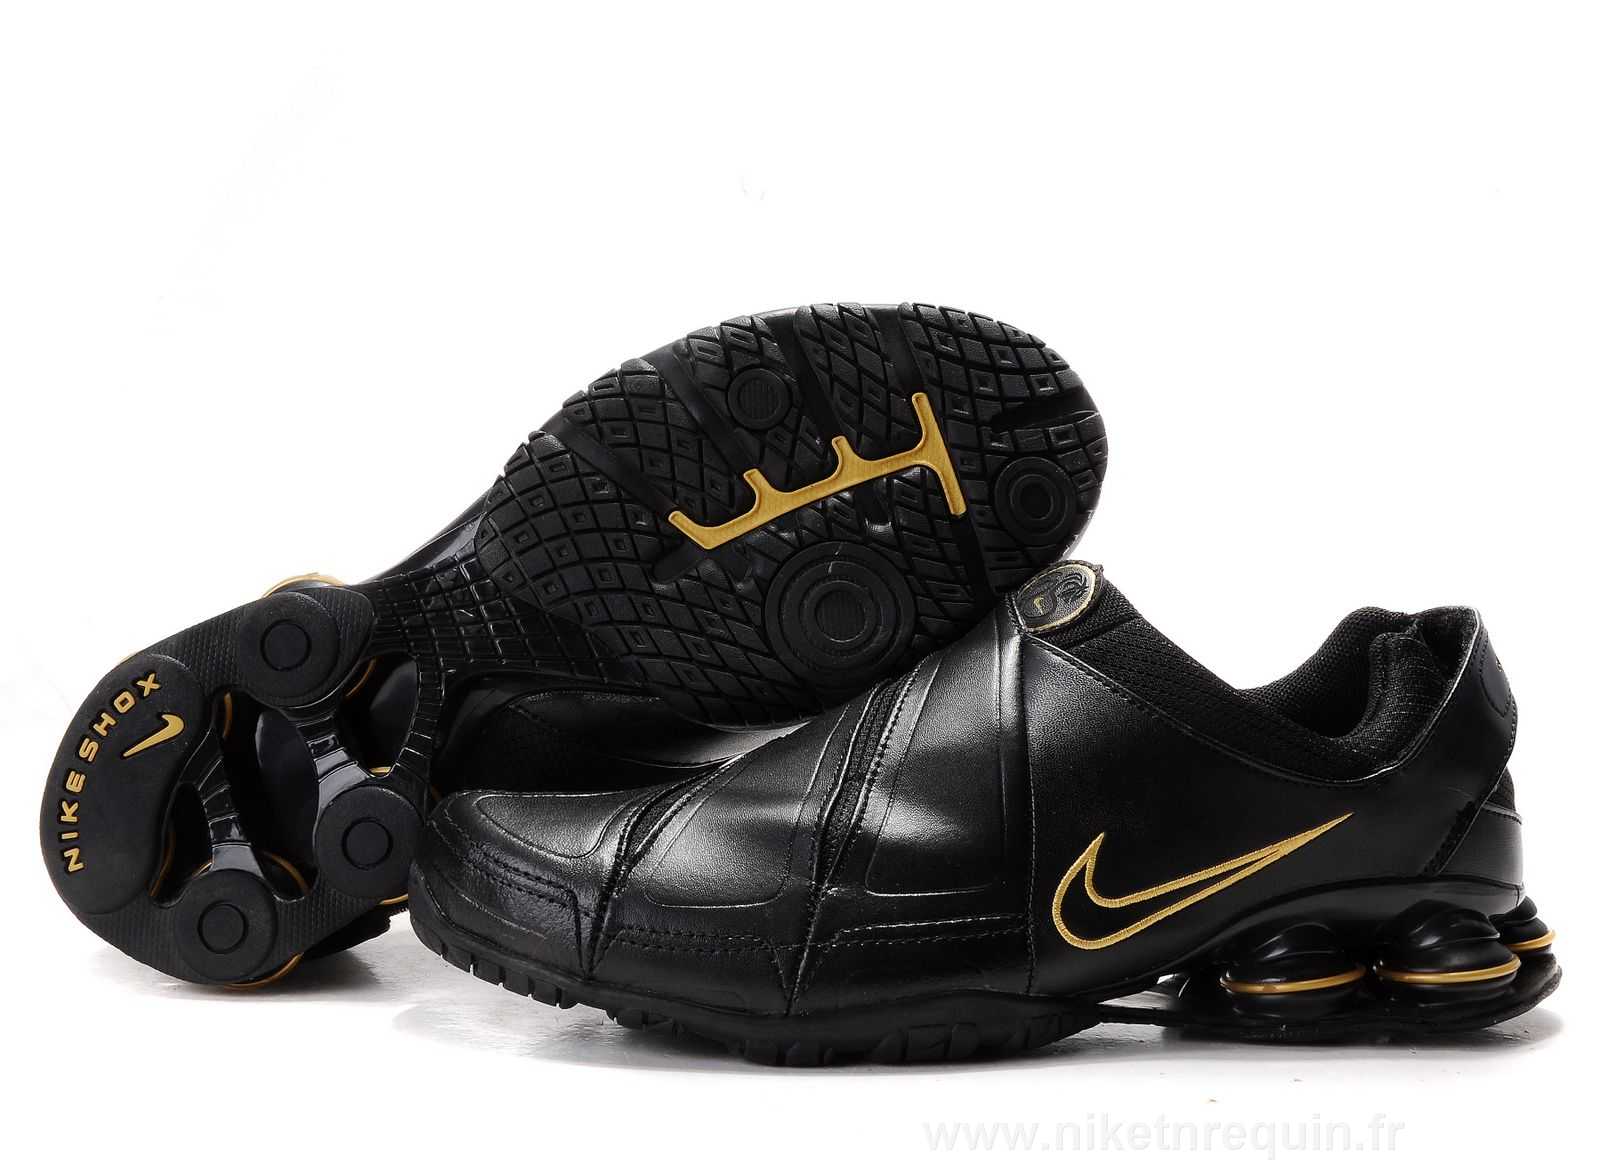 Dore Et Noir Nike Shox R5 610 Leaher